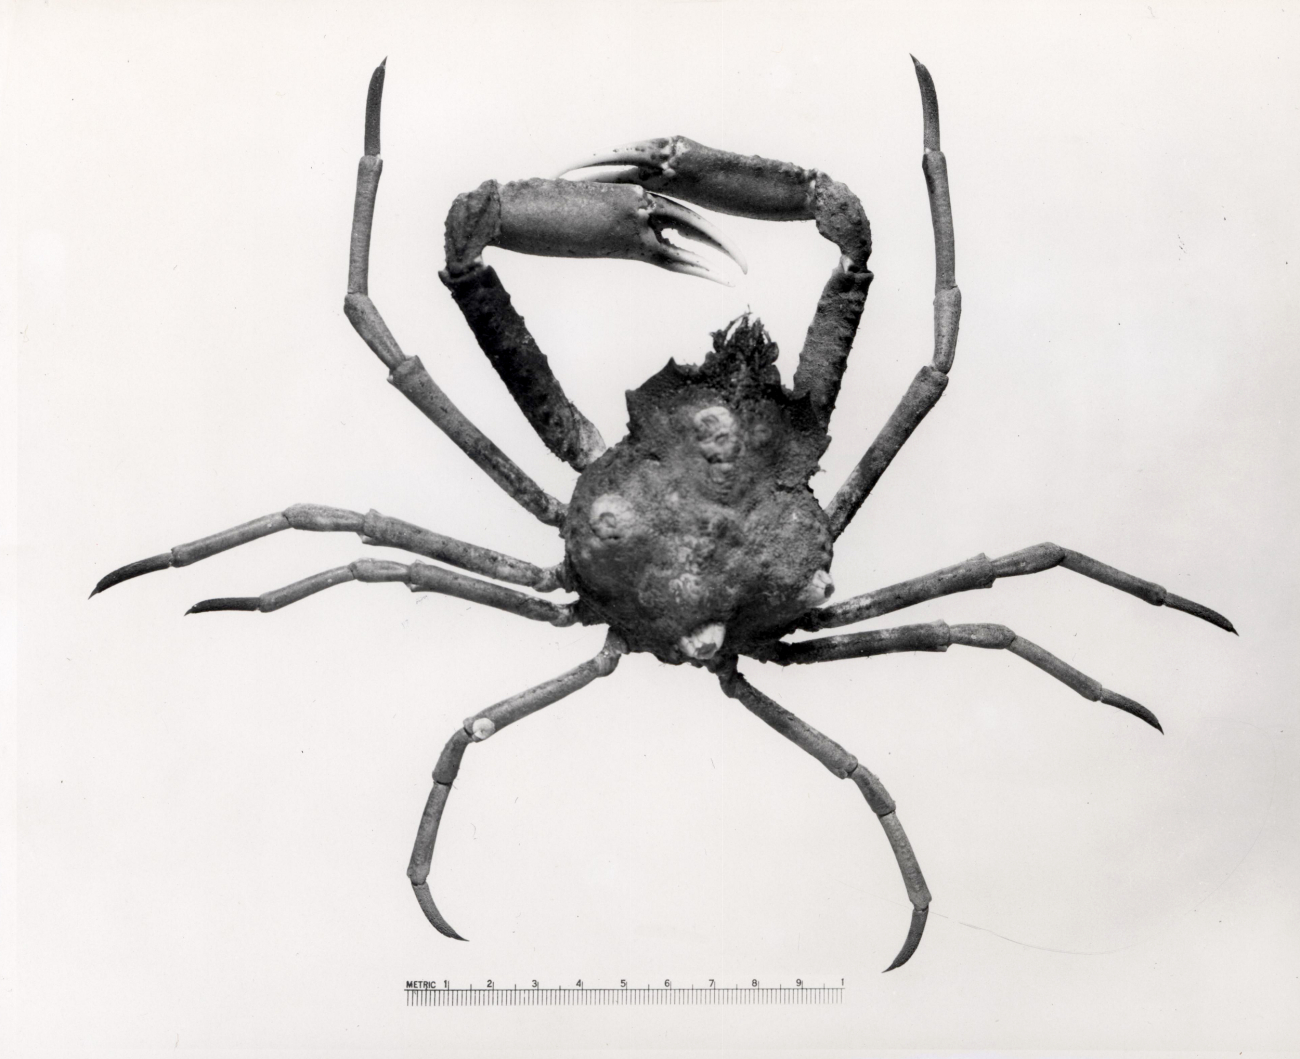 Spider crab (Hvas lvratus)